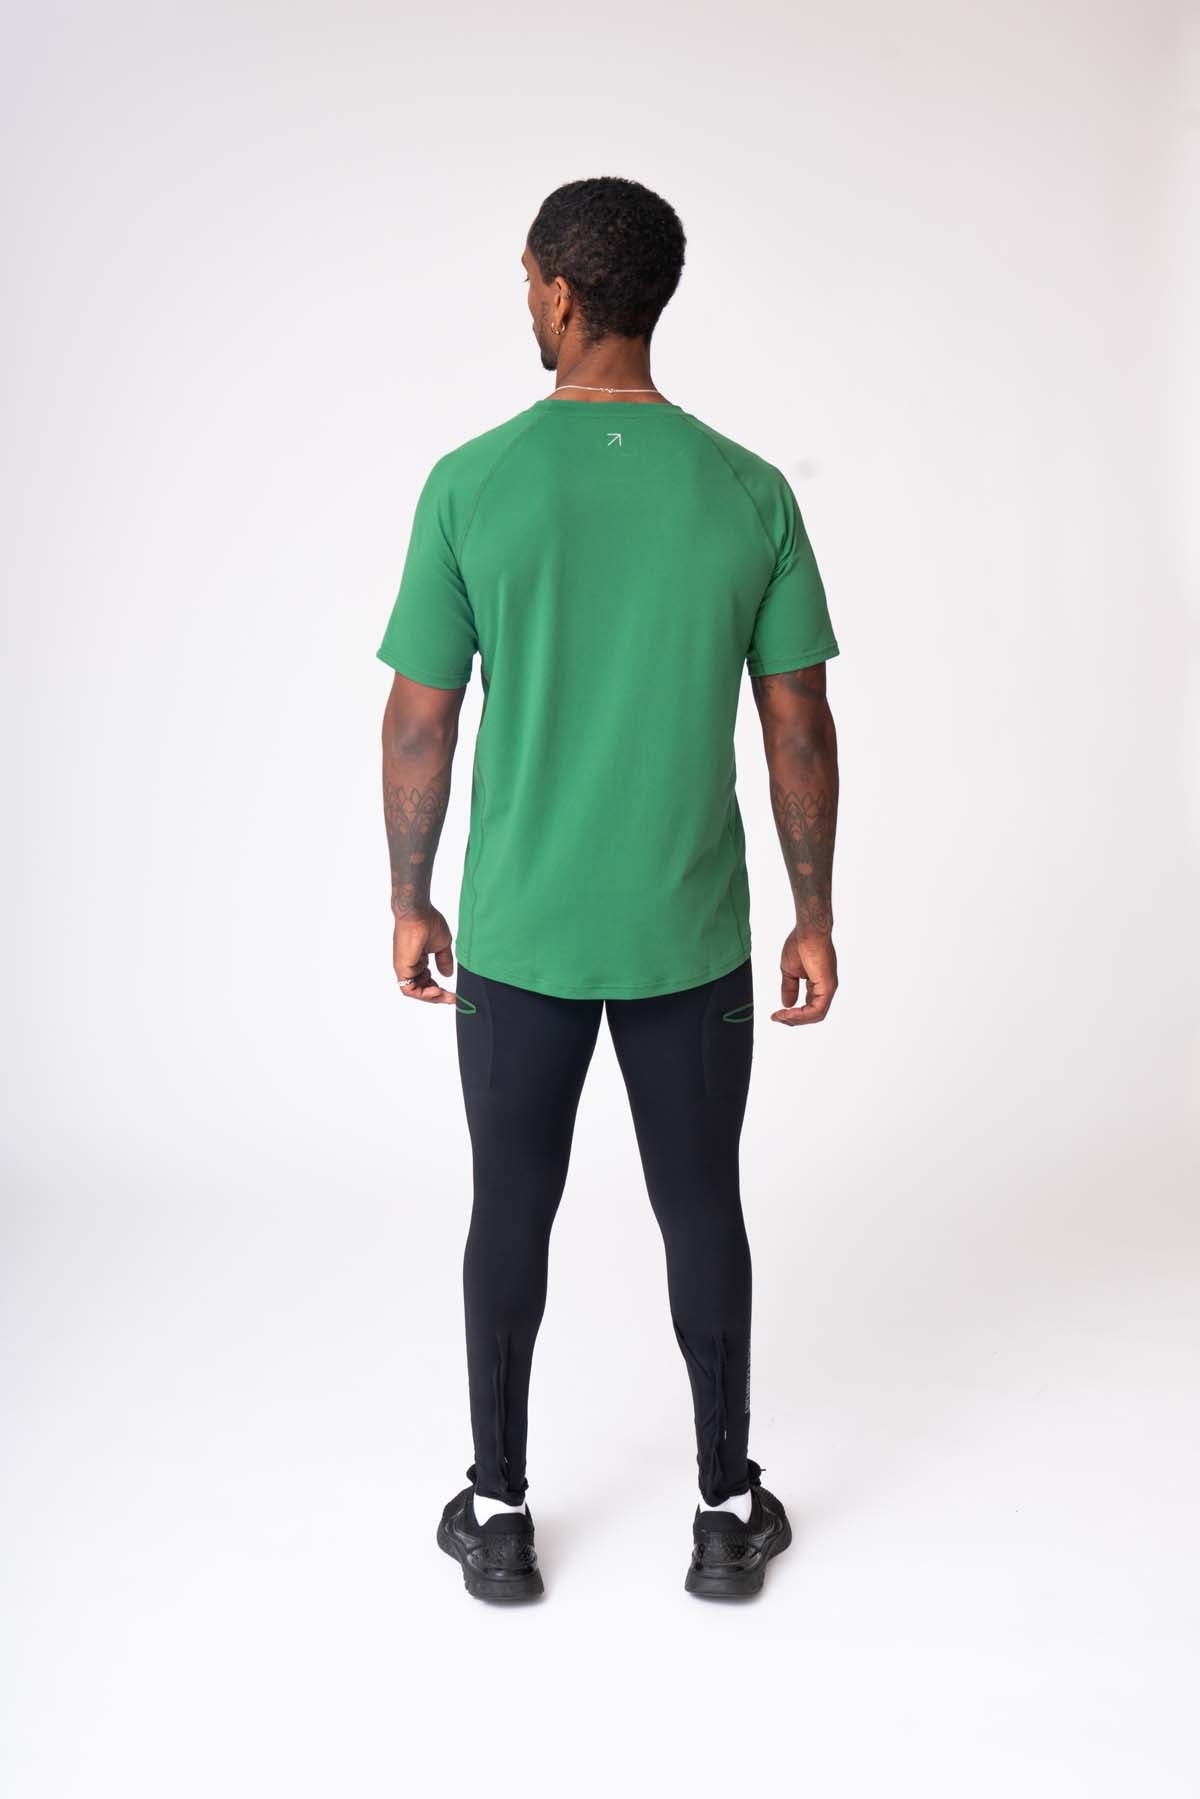 Alaise Active T-Shirt - Green